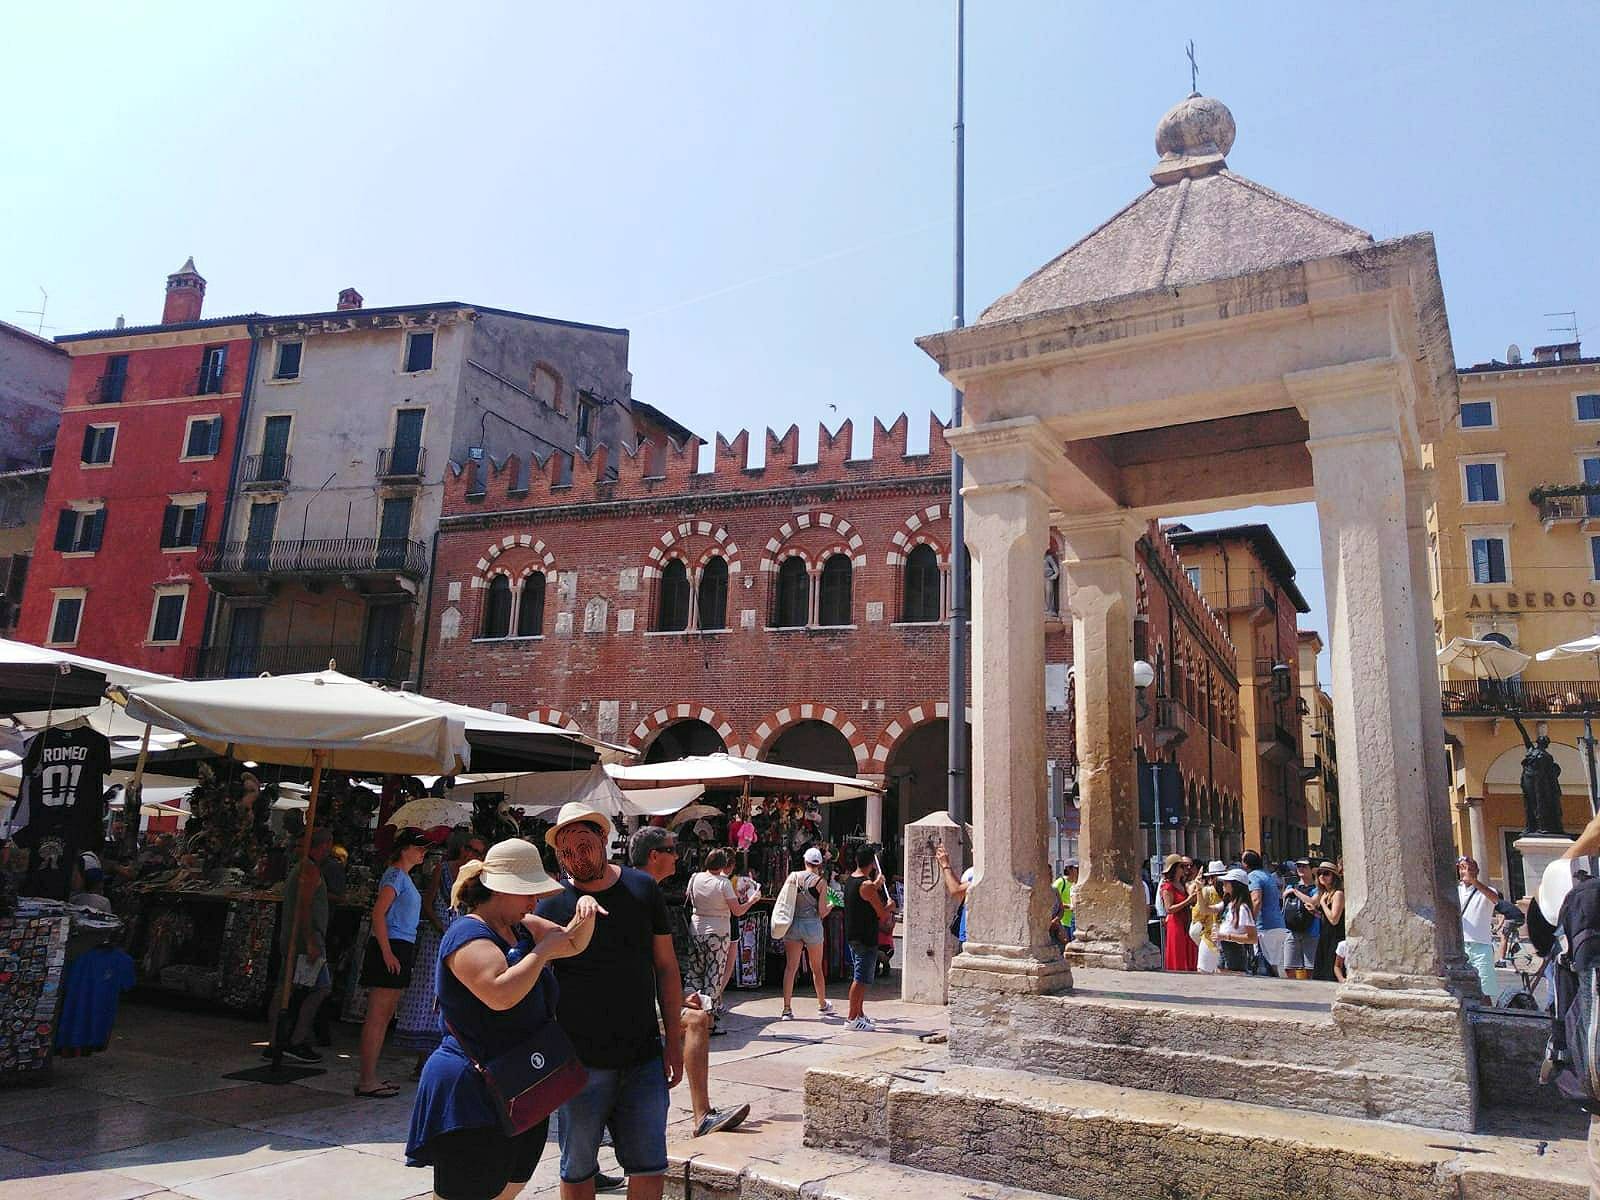 The Piazza delle Erbe